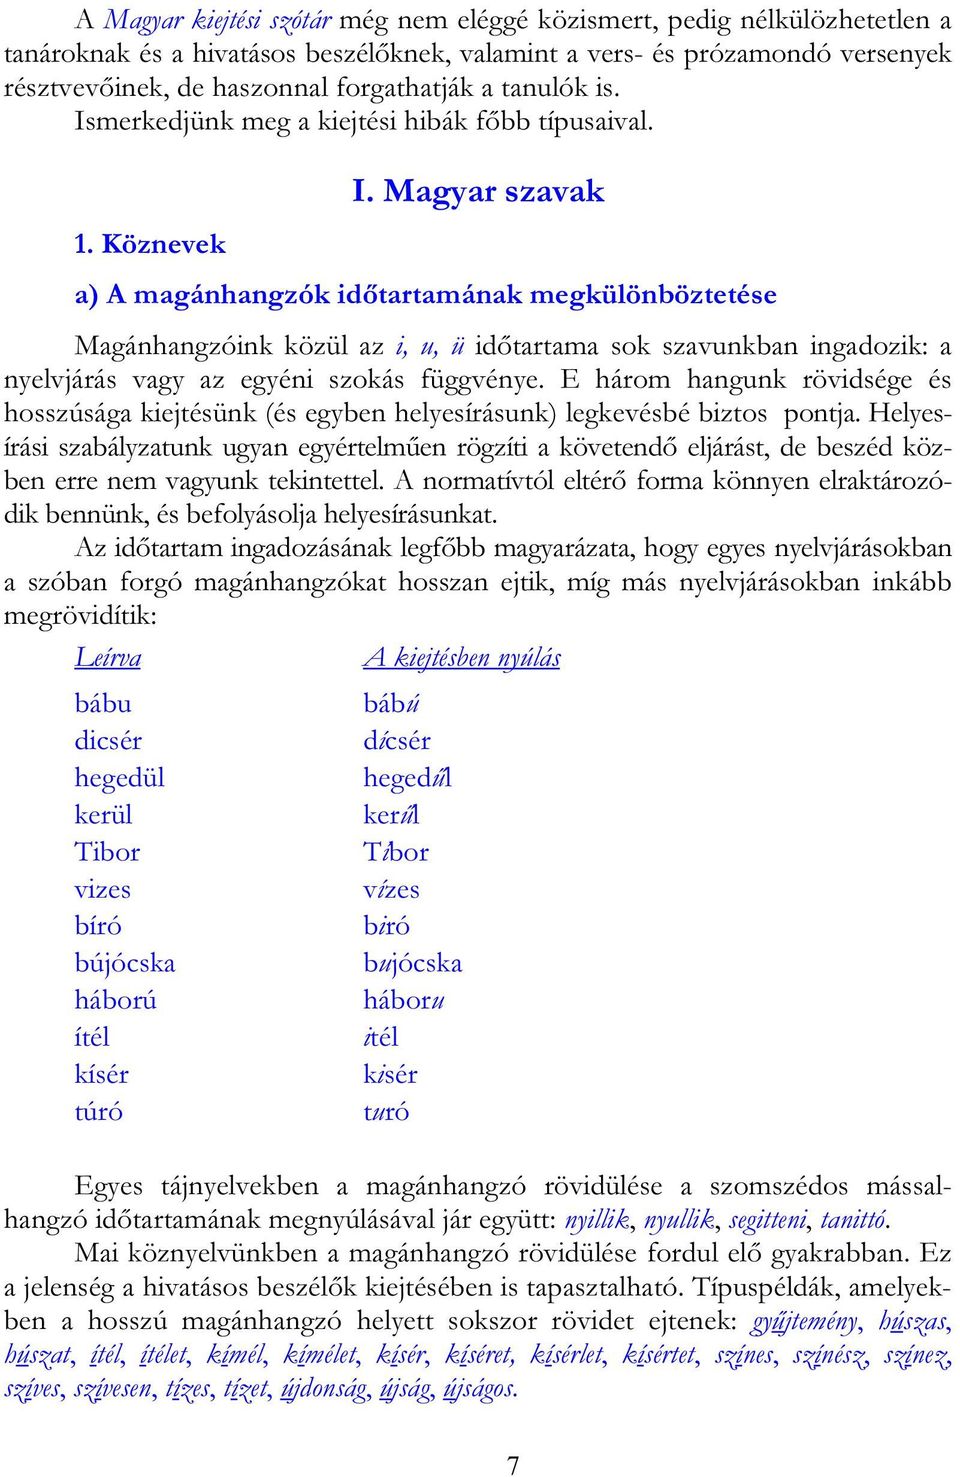 Magyar szavak a) A magánhangzók időtartamának megkülönböztetése Magánhangzóink közül az i, u, ü időtartama sok szavunkban ingadozik: a nyelvjárás vagy az egyéni szokás függvénye.